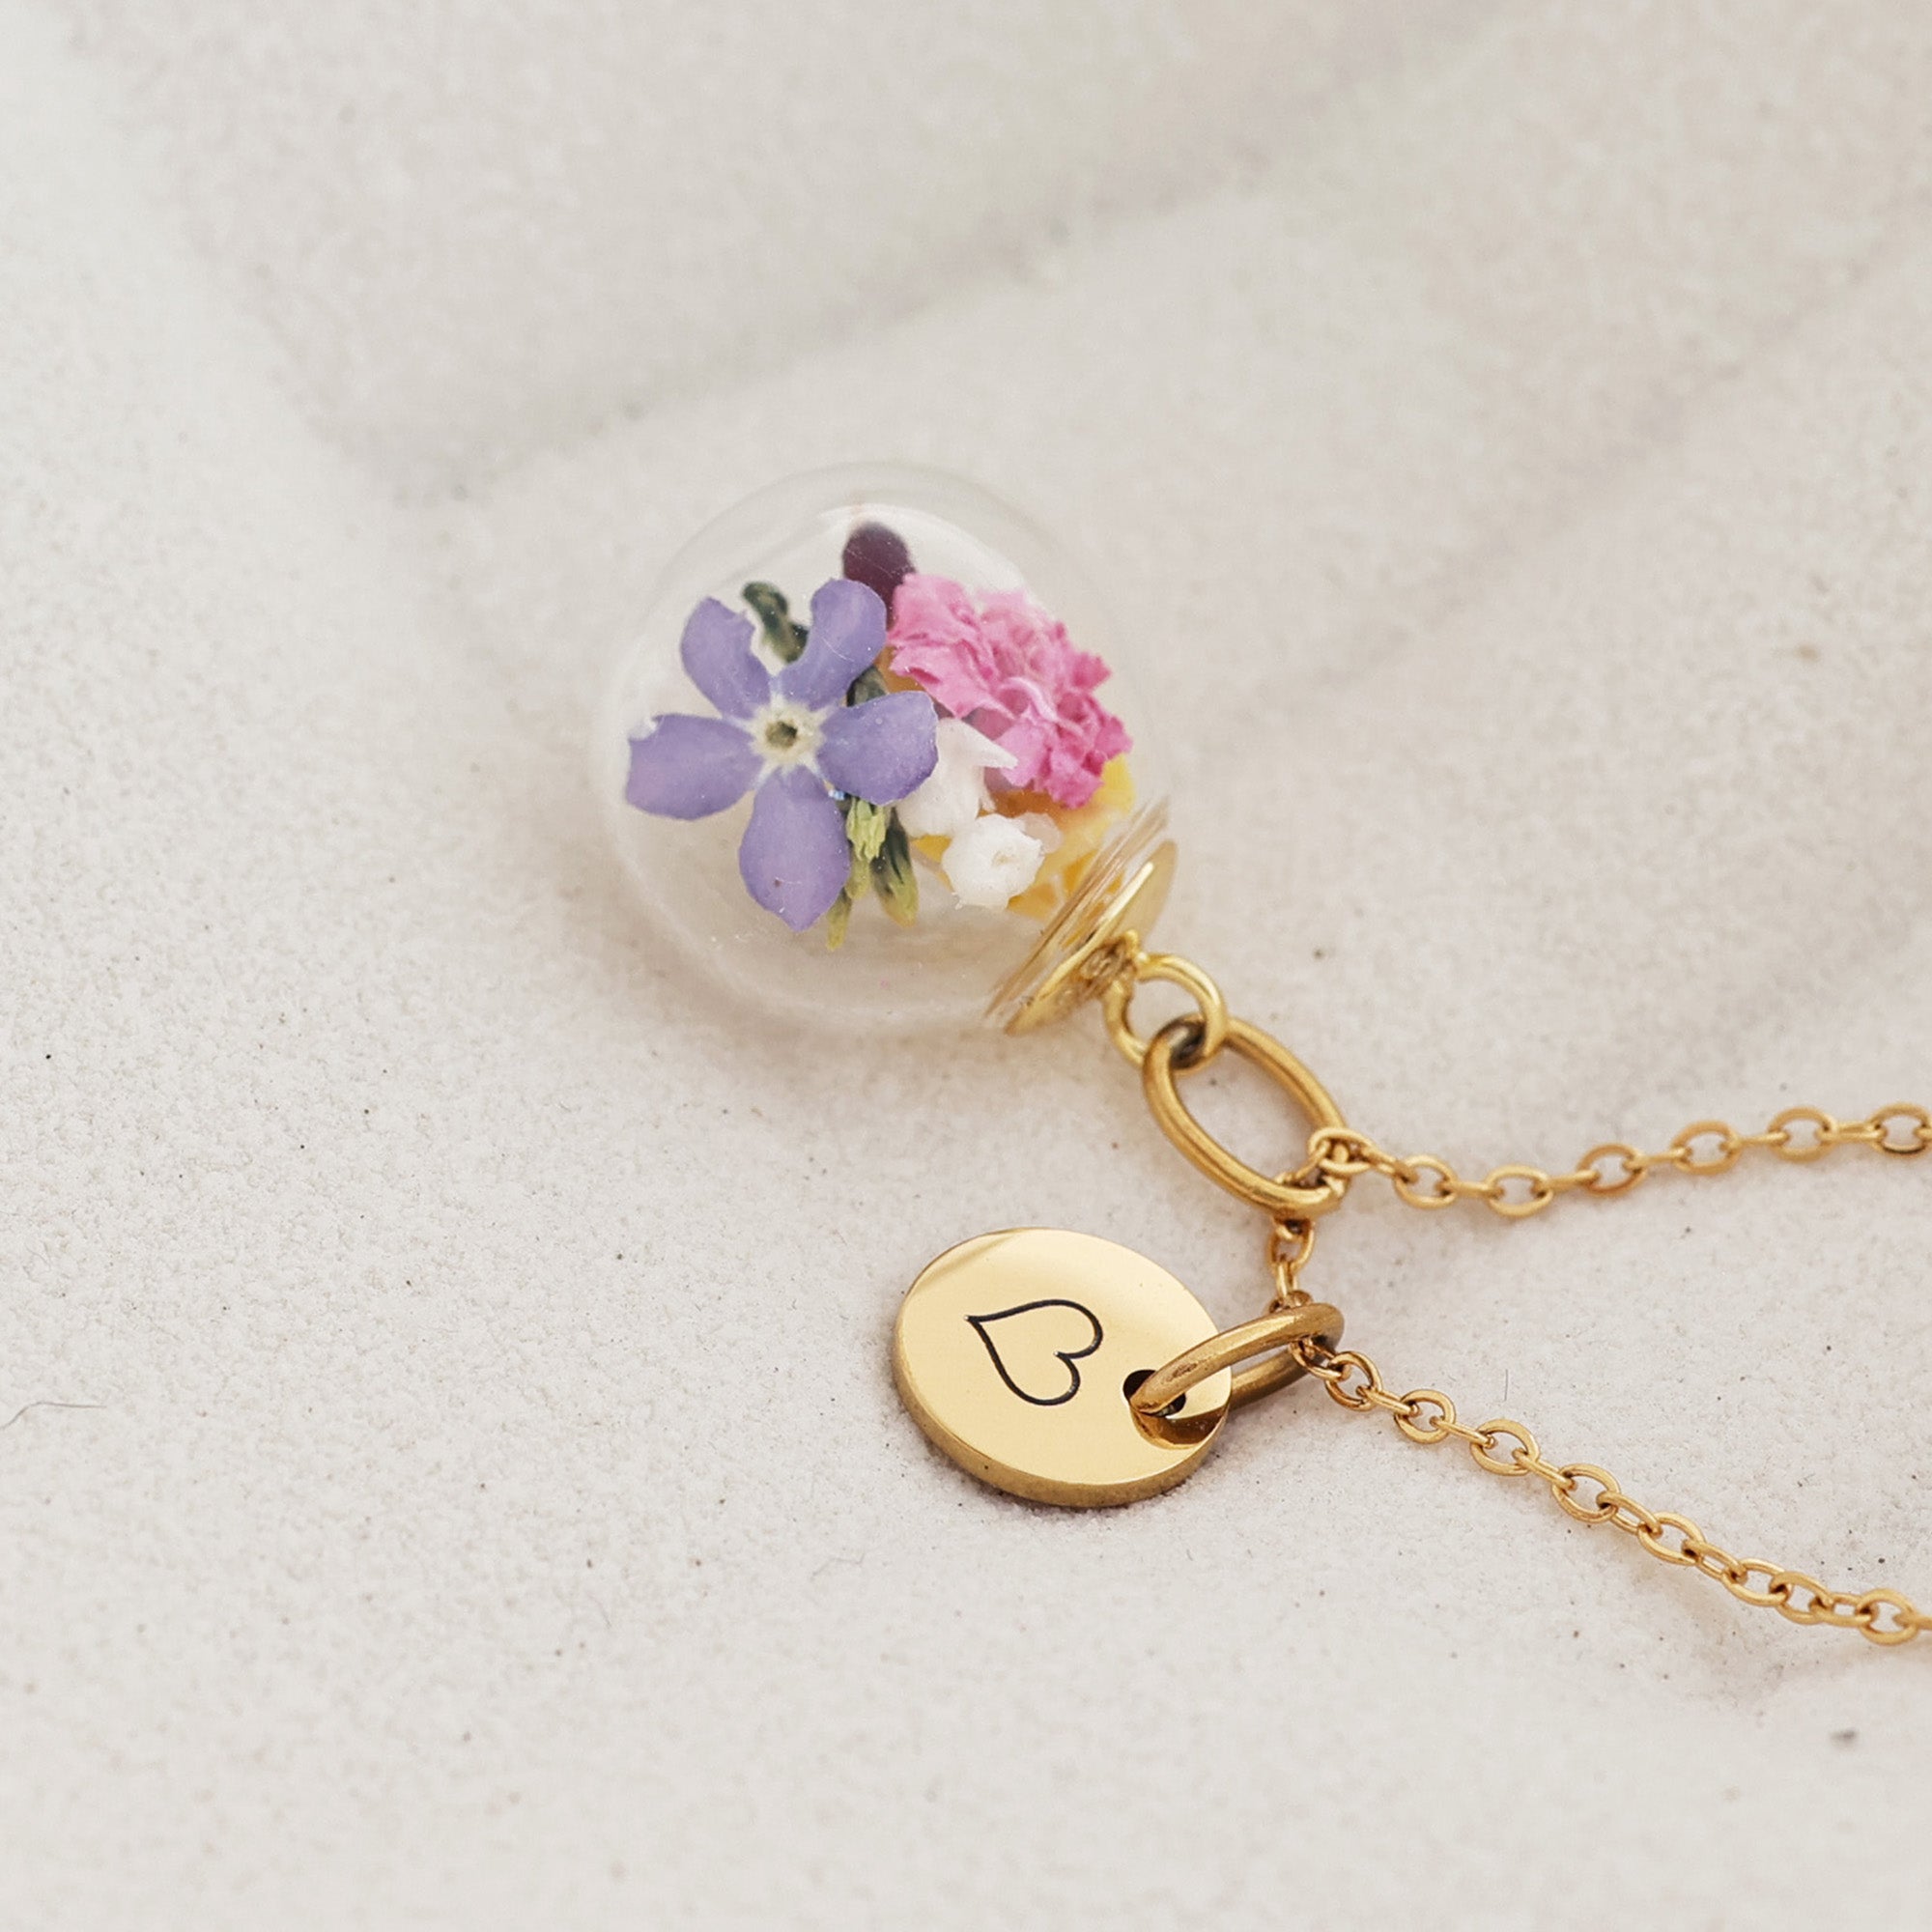 Personalisierte Kette mit echten Blumen - 925er Silber gold silber roségold - Geschenk für sie - Hochzeit Schmuck - Schmuck mit Gravur k301